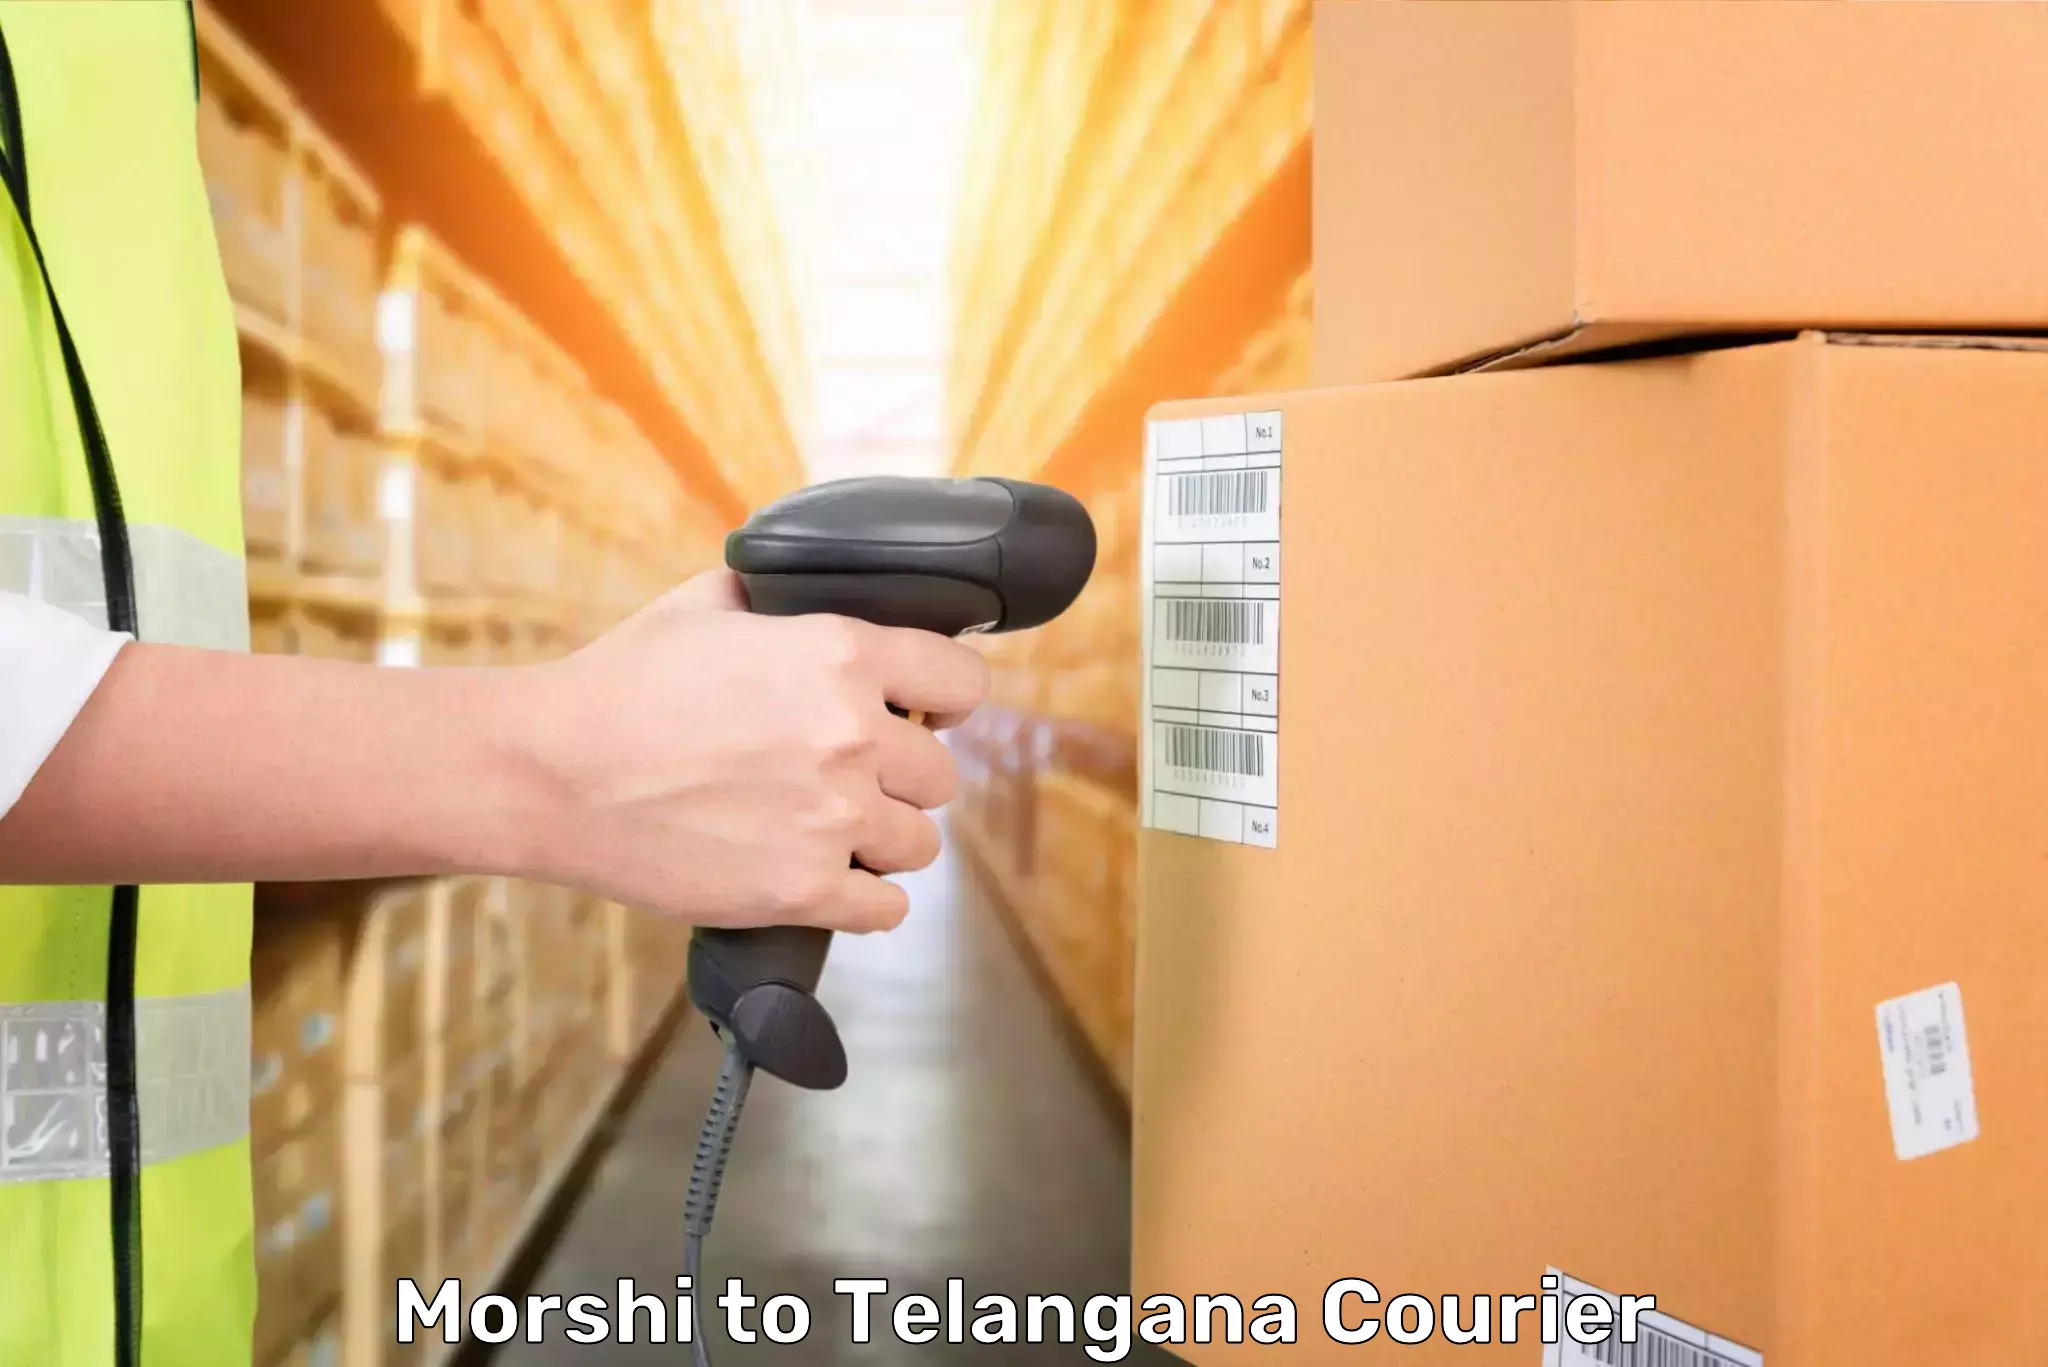 Baggage transport network Morshi to Telangana